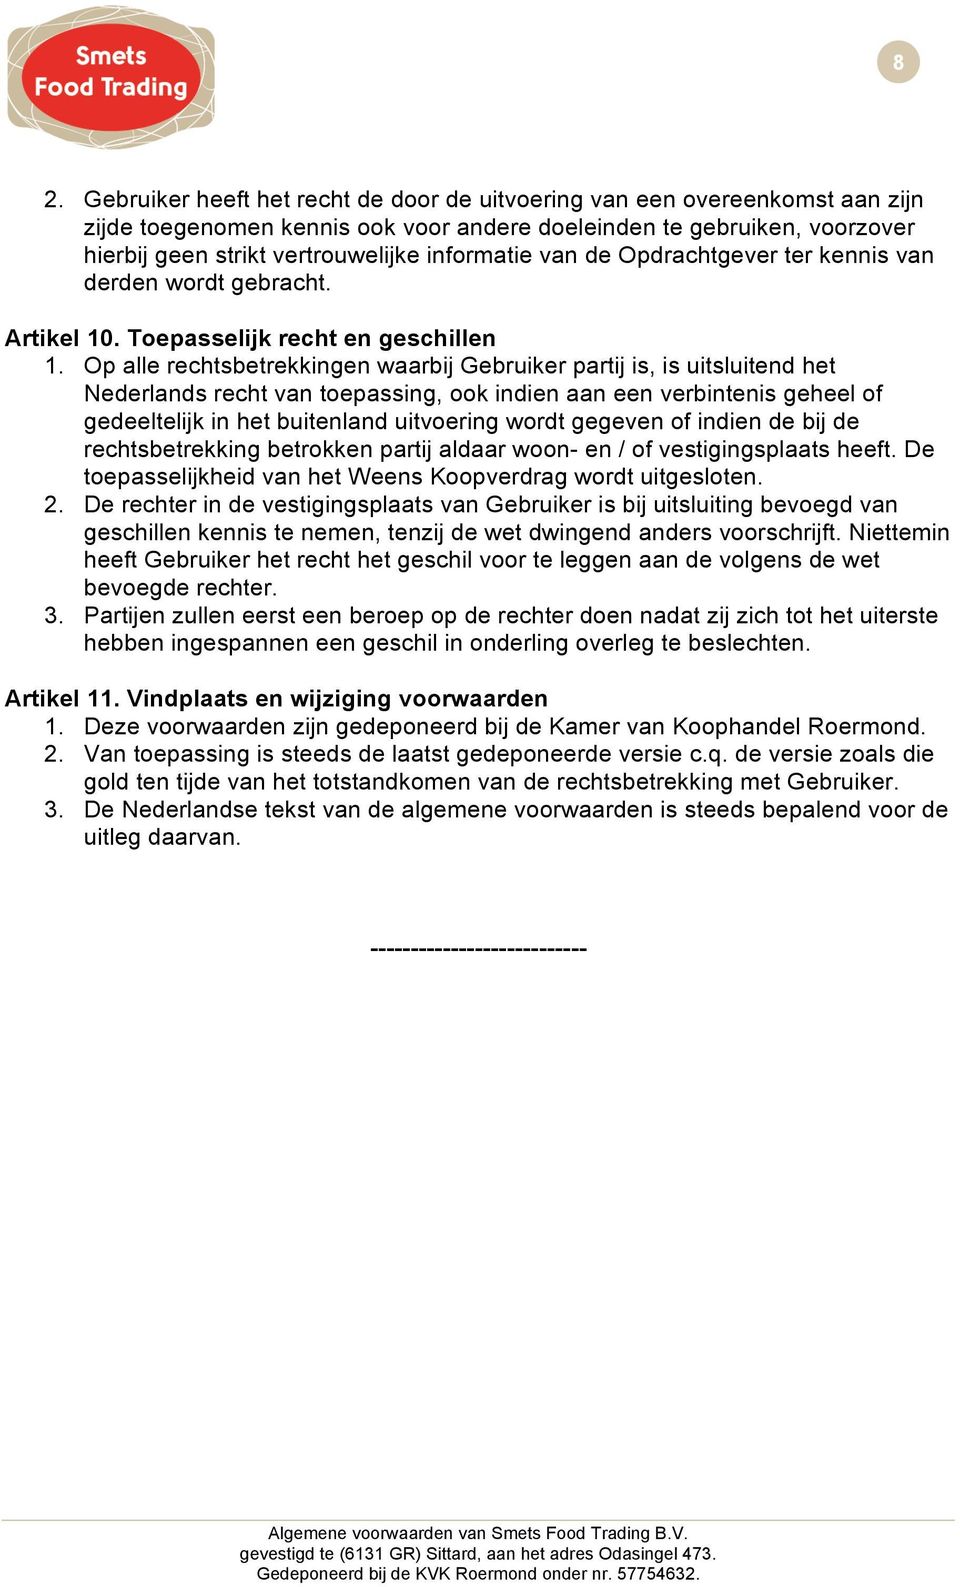 Op alle rechtsbetrekkingen waarbij Gebruiker partij is, is uitsluitend het Nederlands recht van toepassing, ook indien aan een verbintenis geheel of gedeeltelijk in het buitenland uitvoering wordt